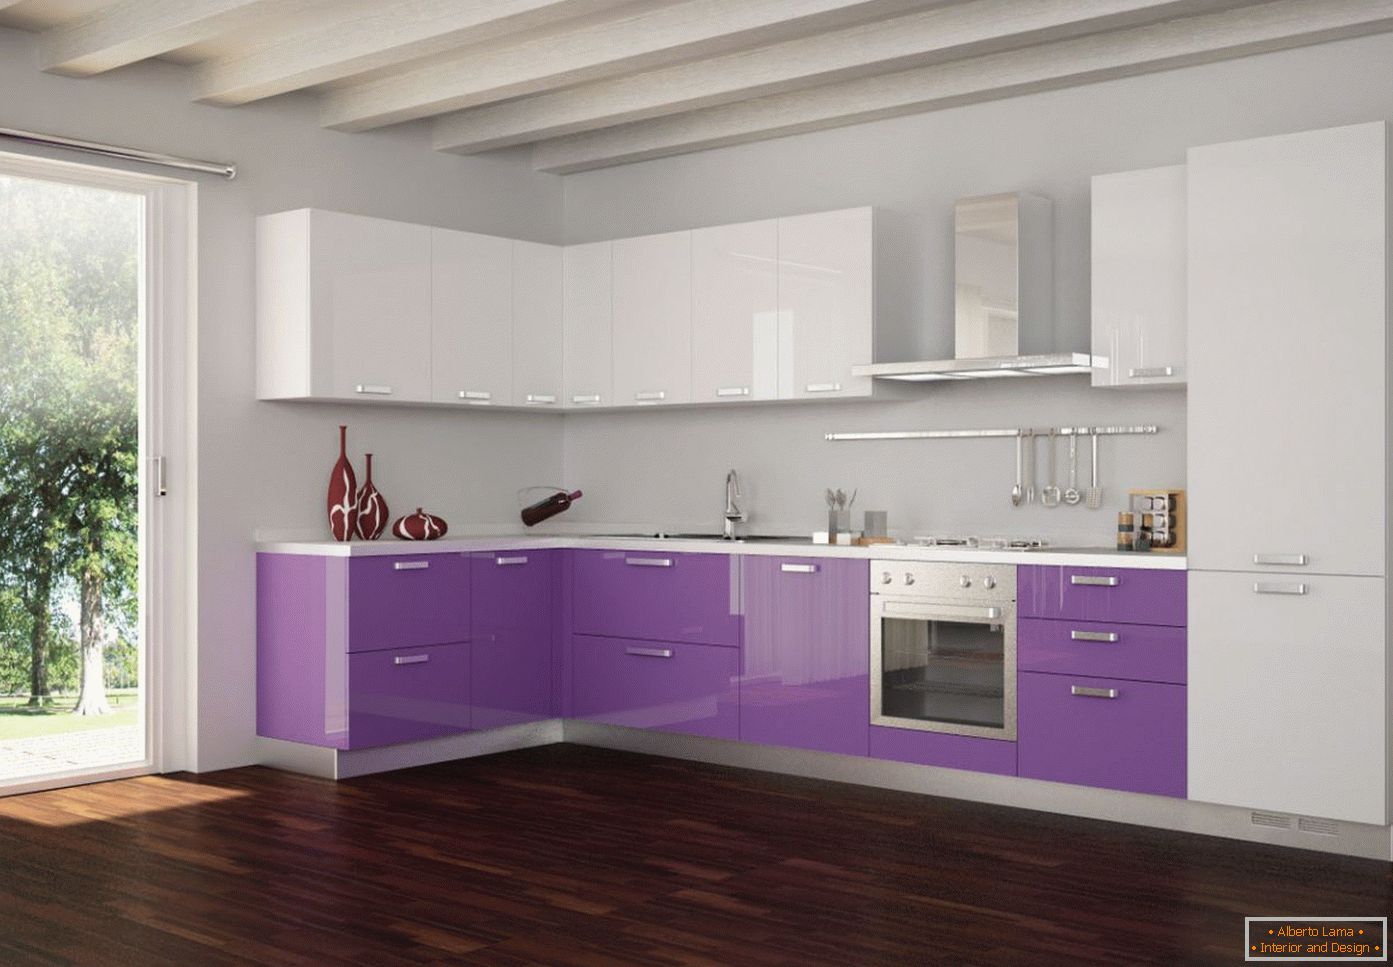 Viola e bianco nel design della cucina